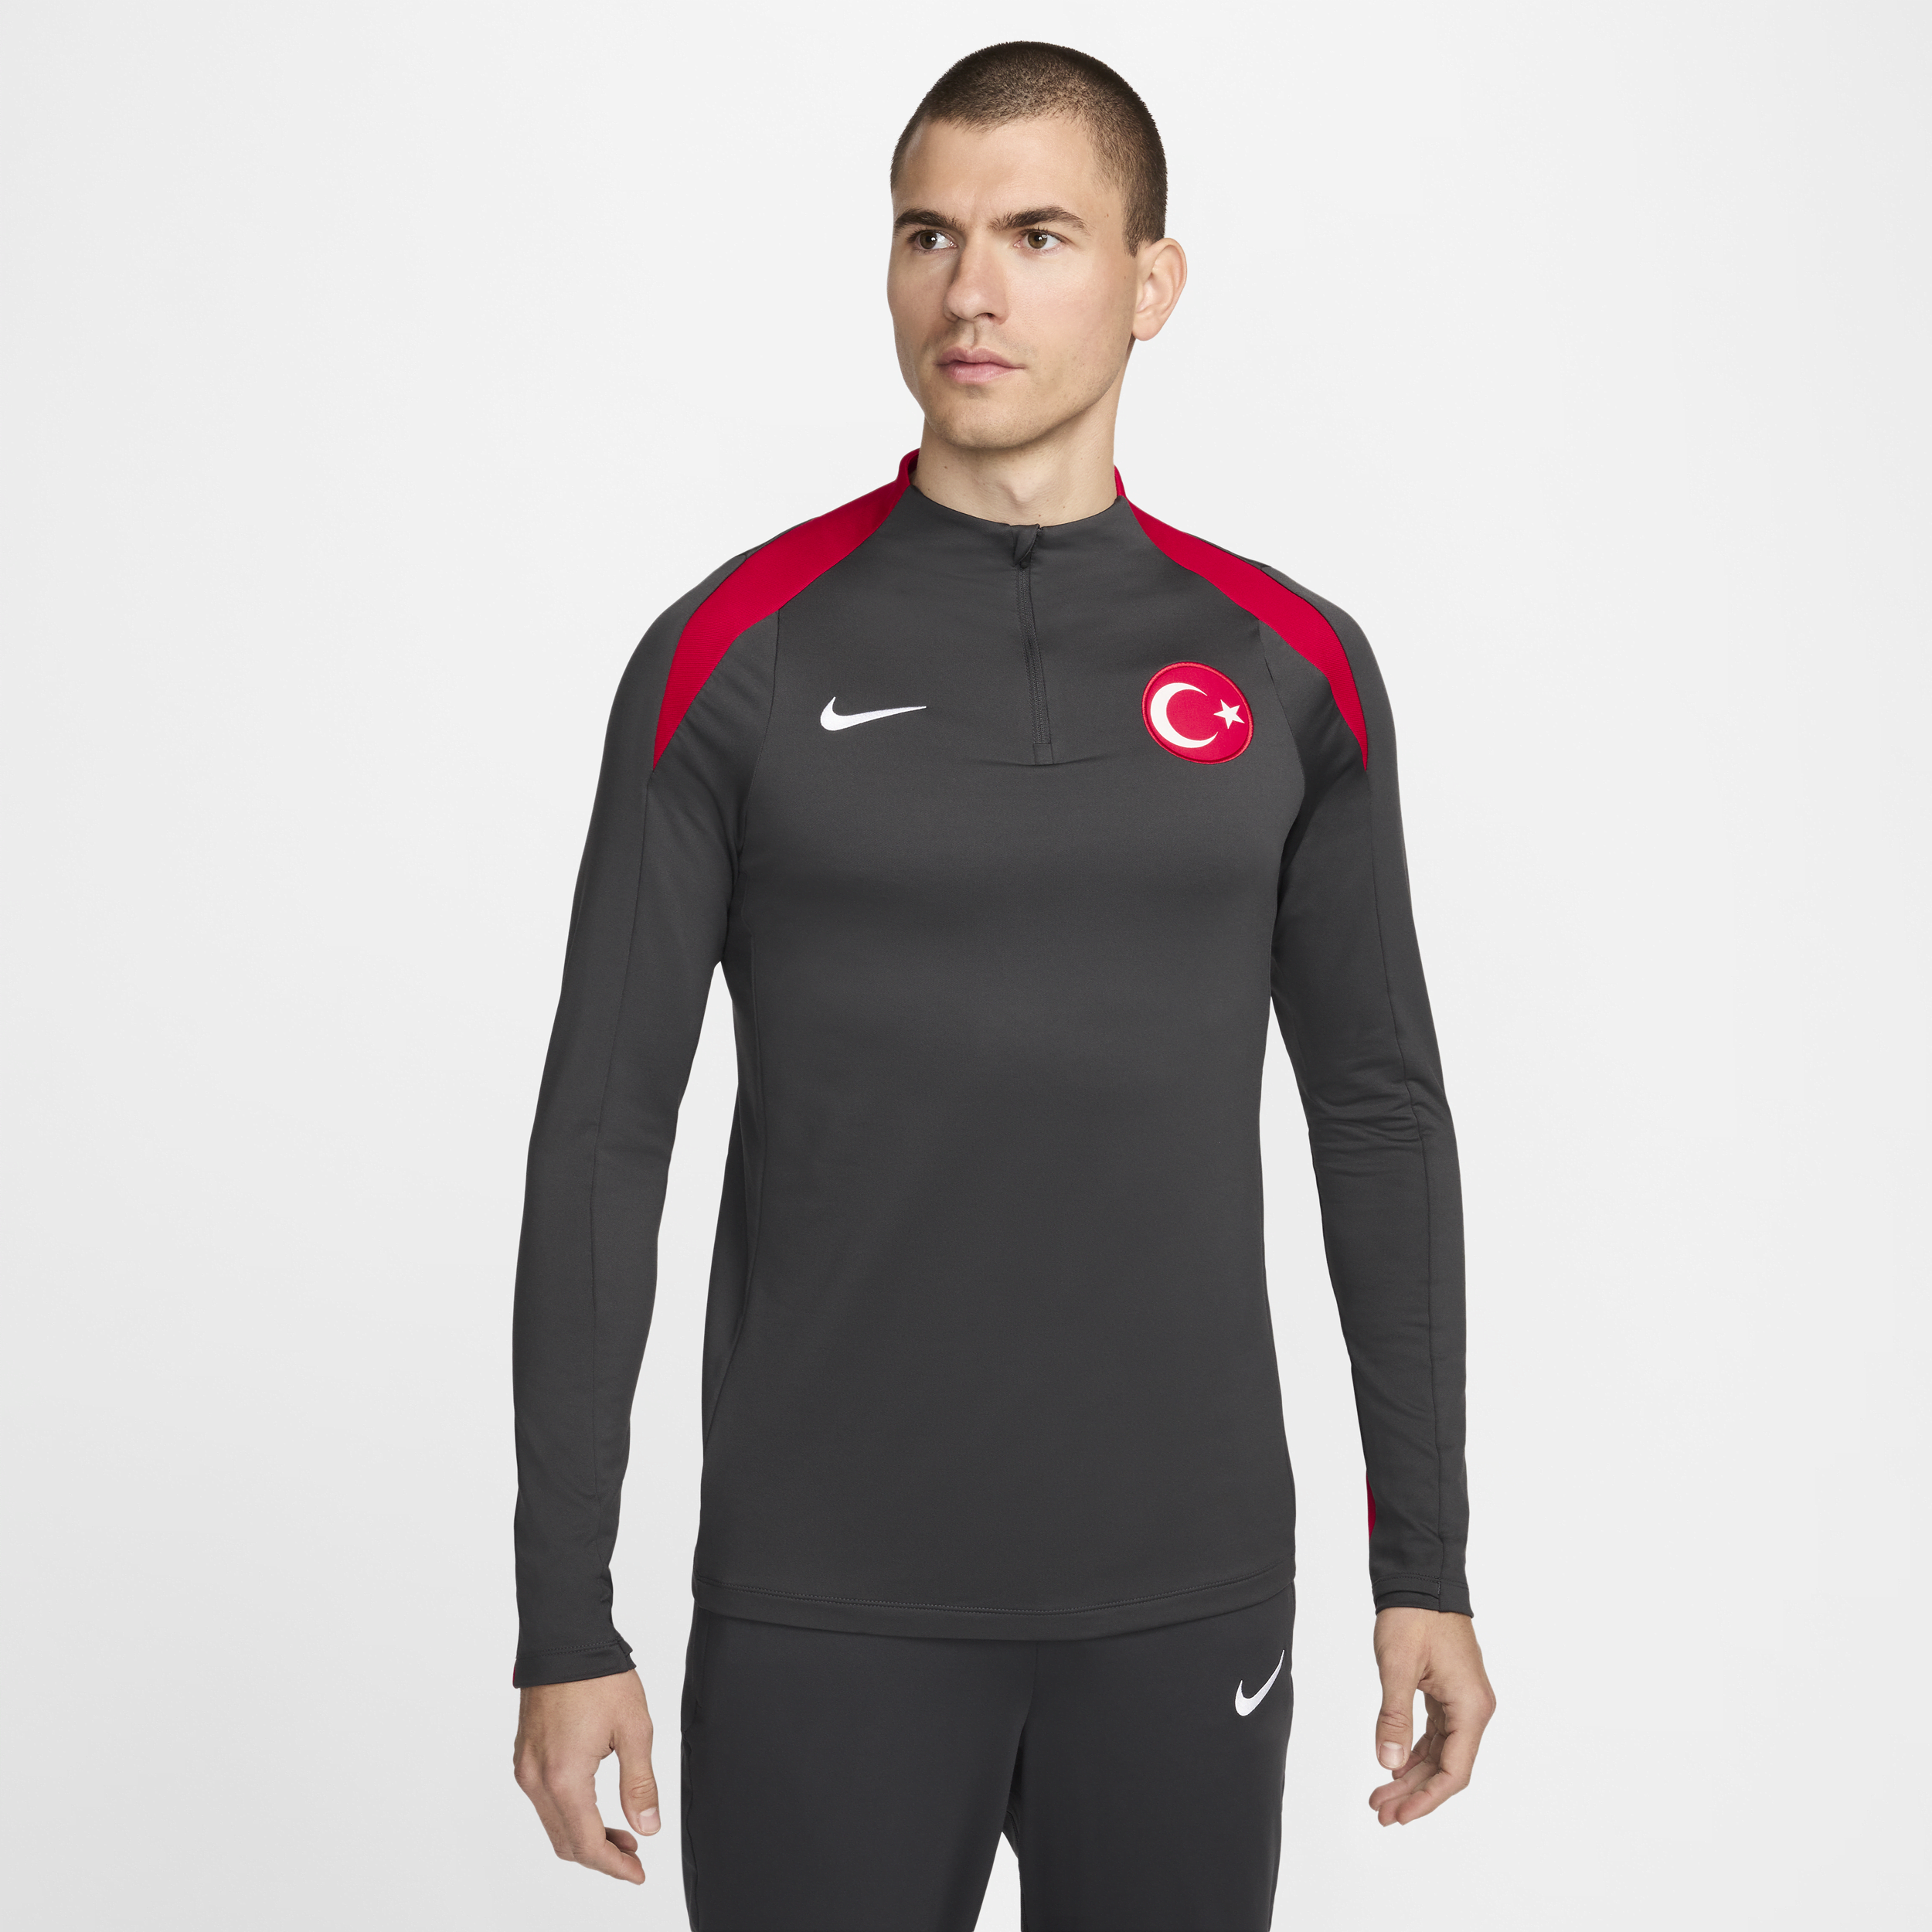 Maglia da calcio per allenamento Nike Dri-FIT Turchia Strike – Uomo - Grigio